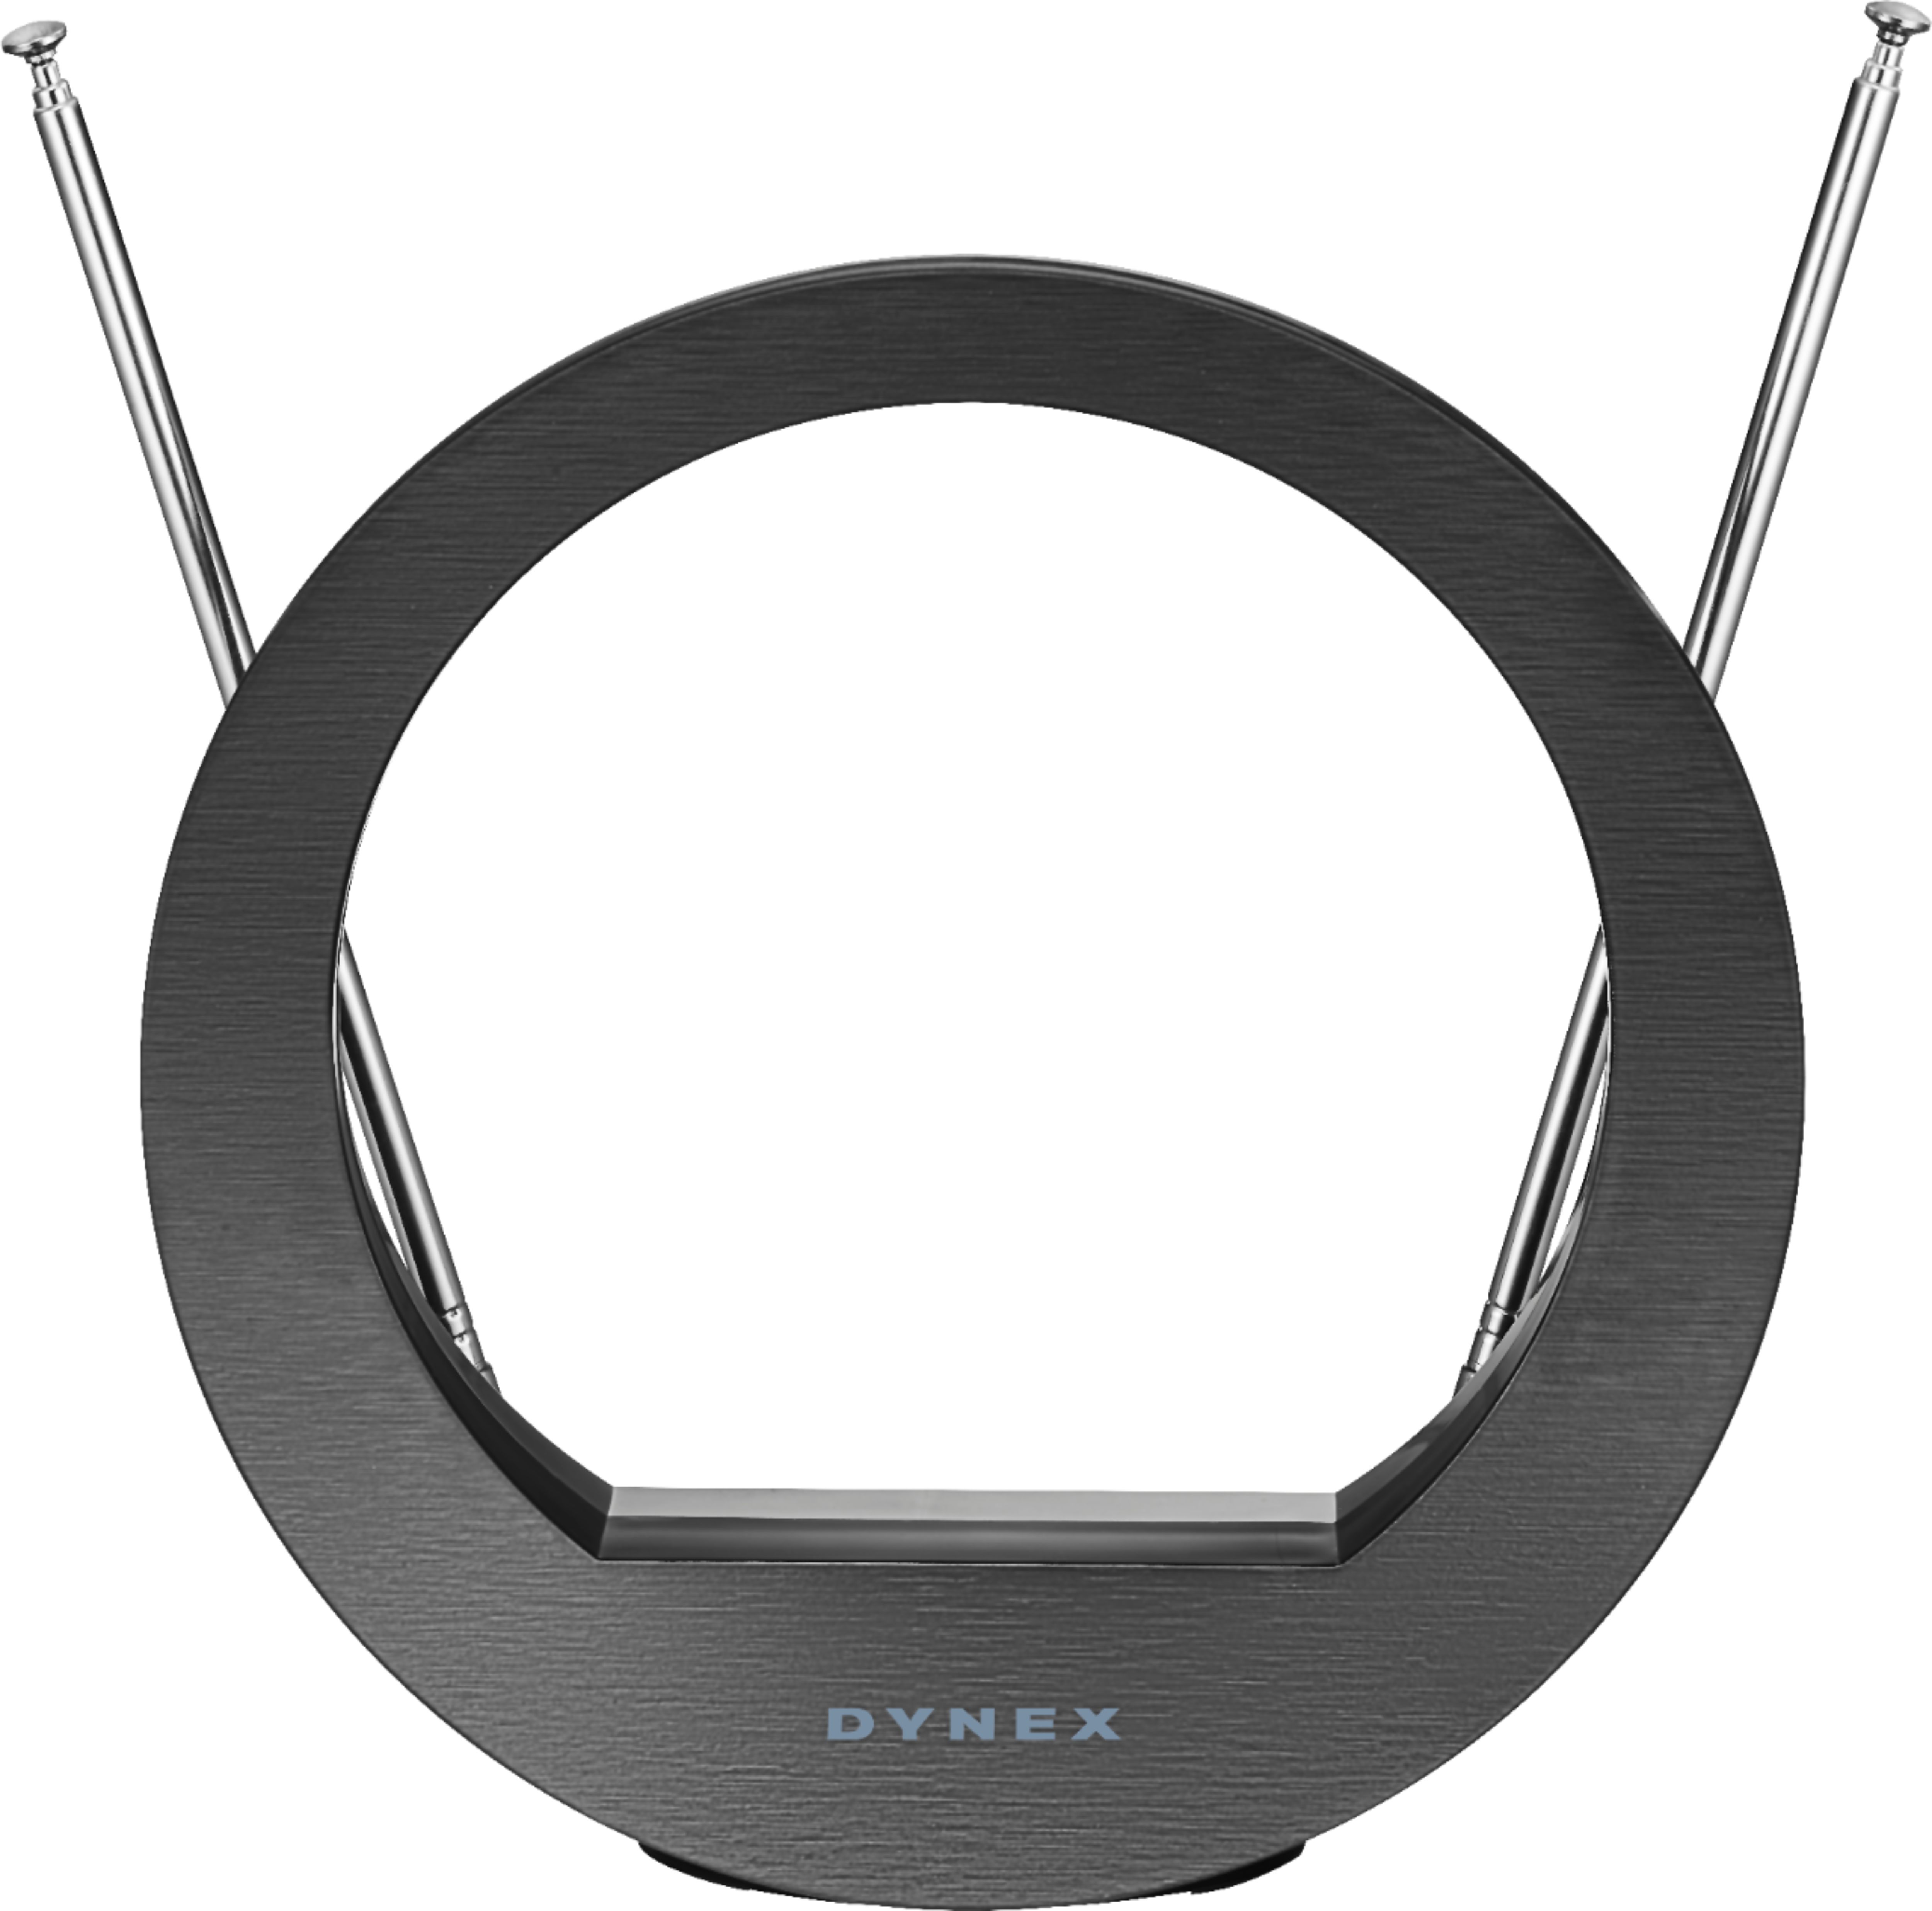 Dynex™ - Indoor Tabletop HDTV Antenna - Black